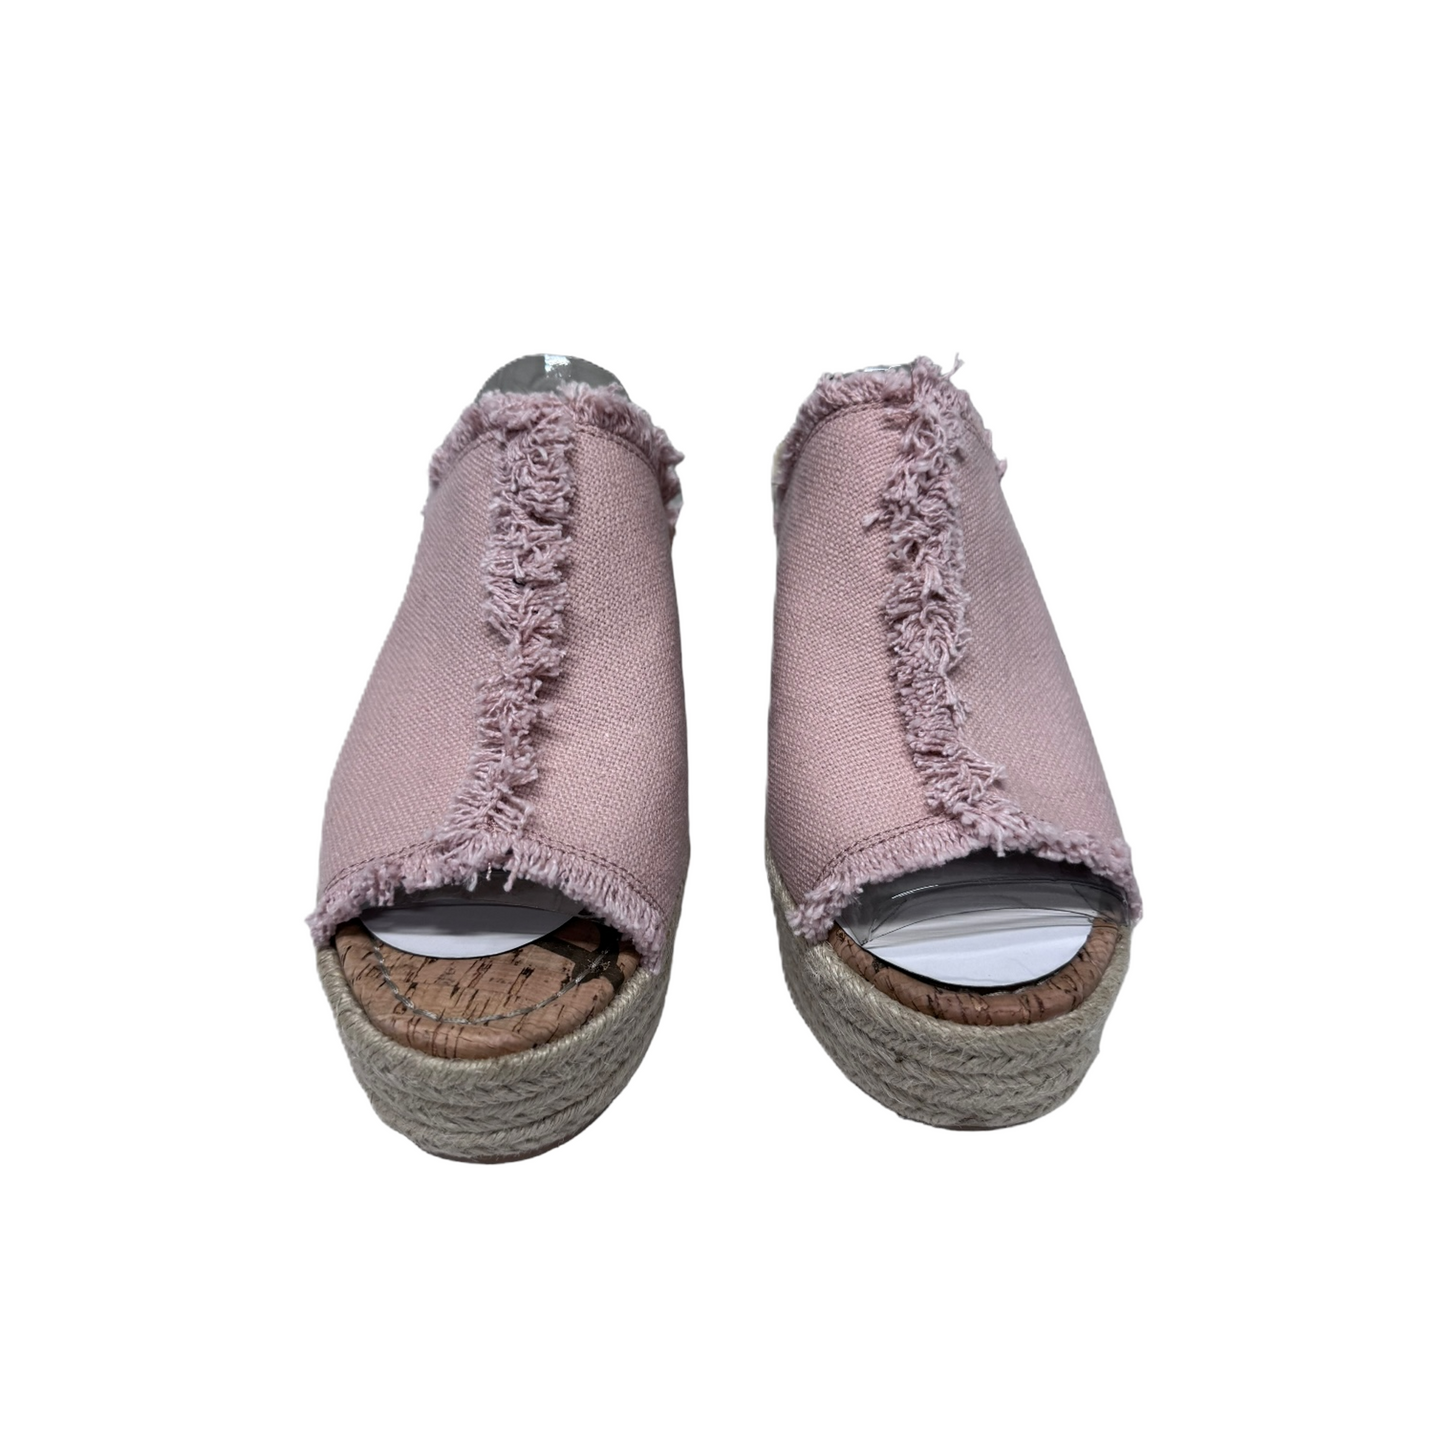 Sandals Heels Wedge By Sam Edelman  Size: 10